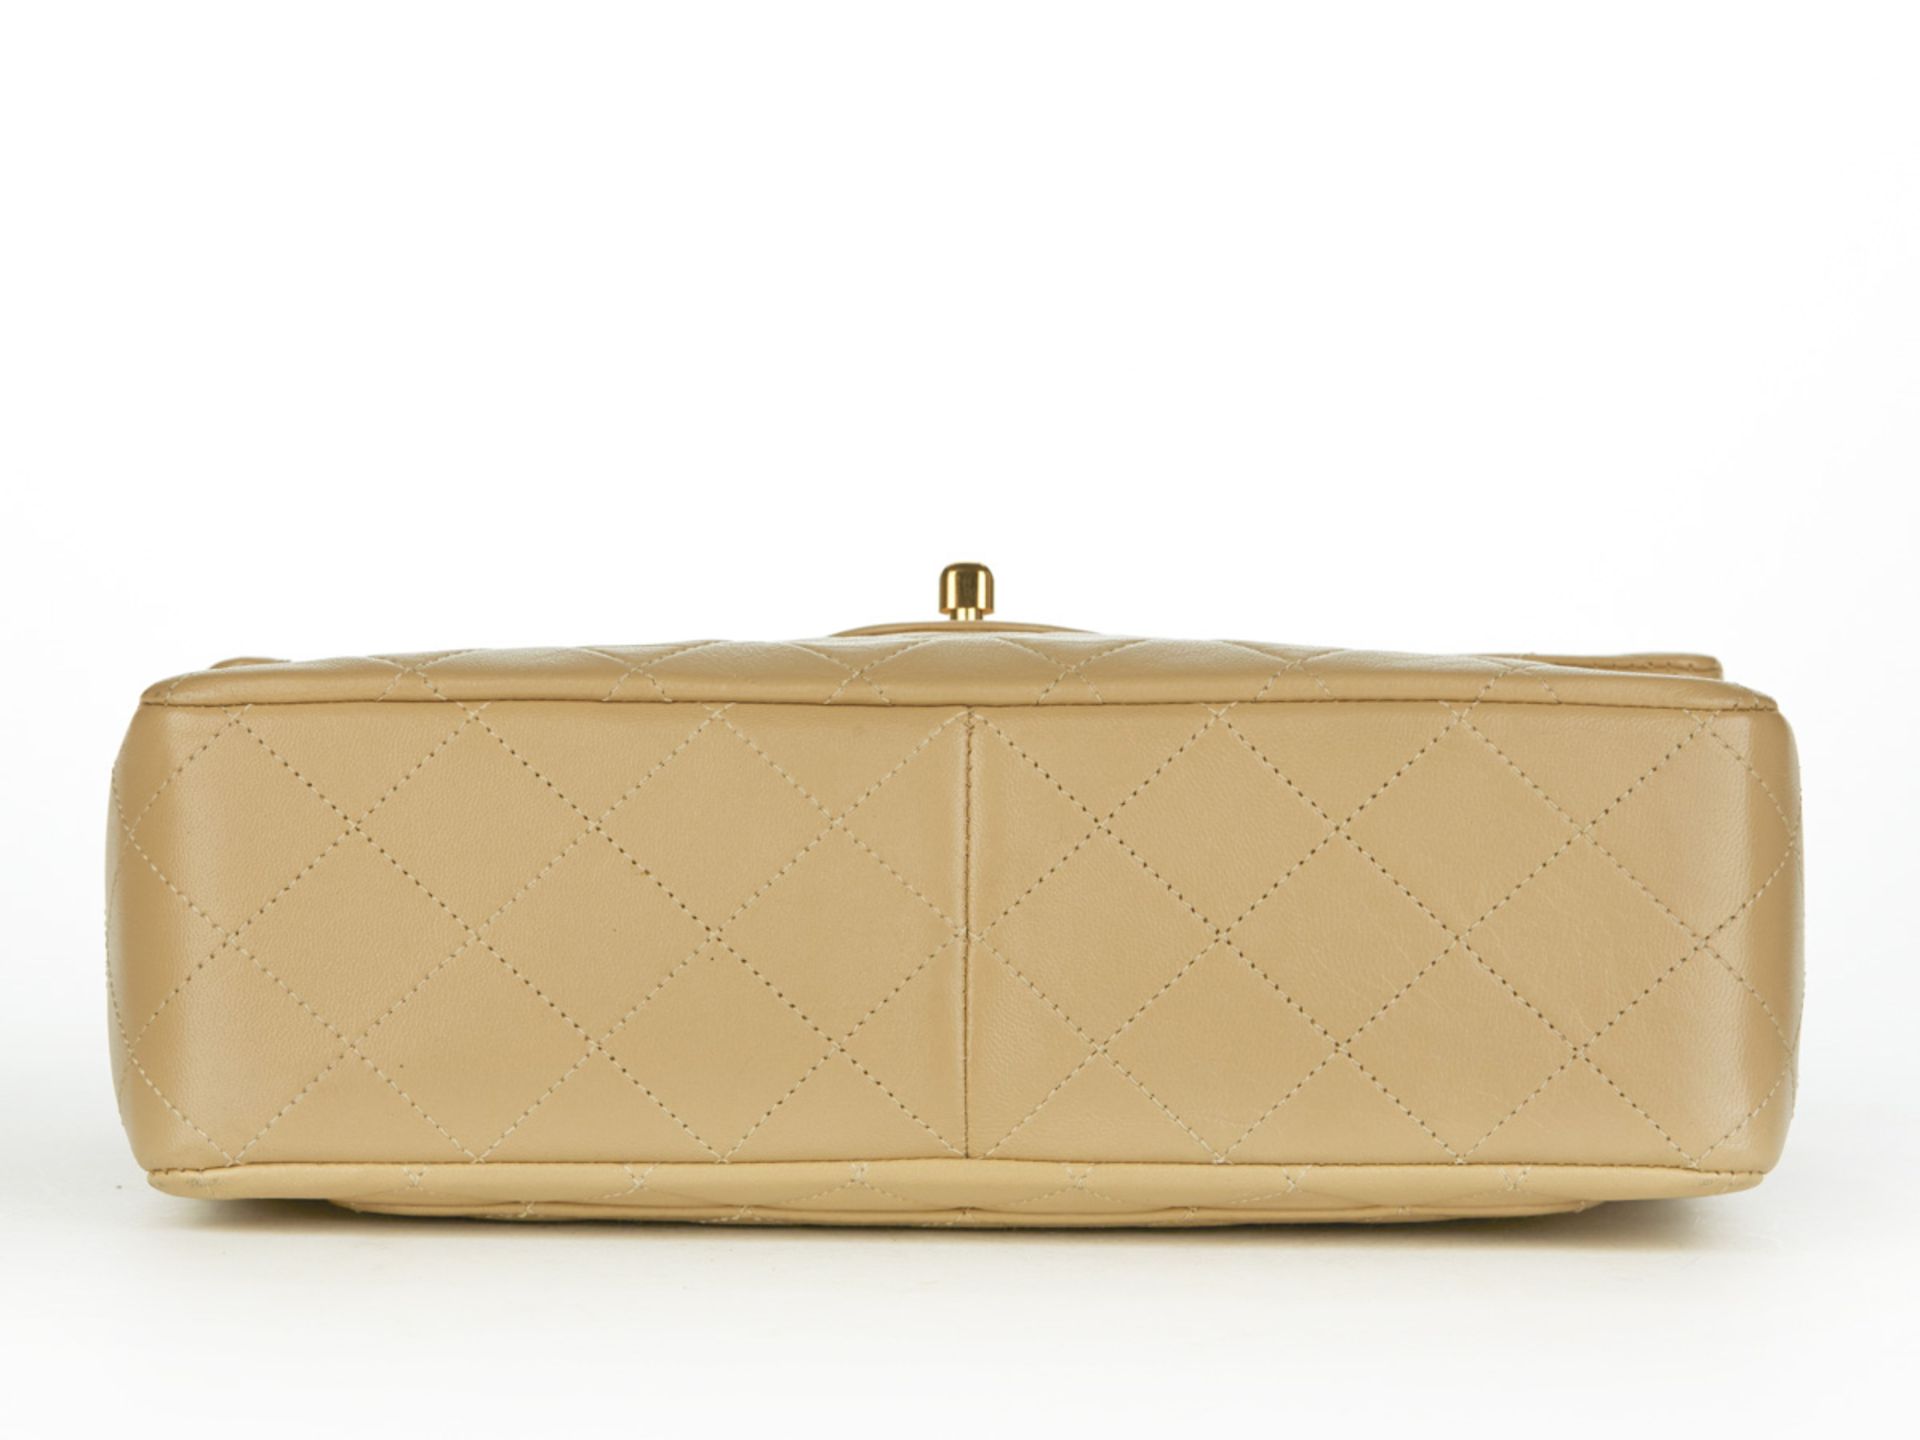 HB097 Chanel - Jumbo Classic Double Flap Bag - Image 5 of 10